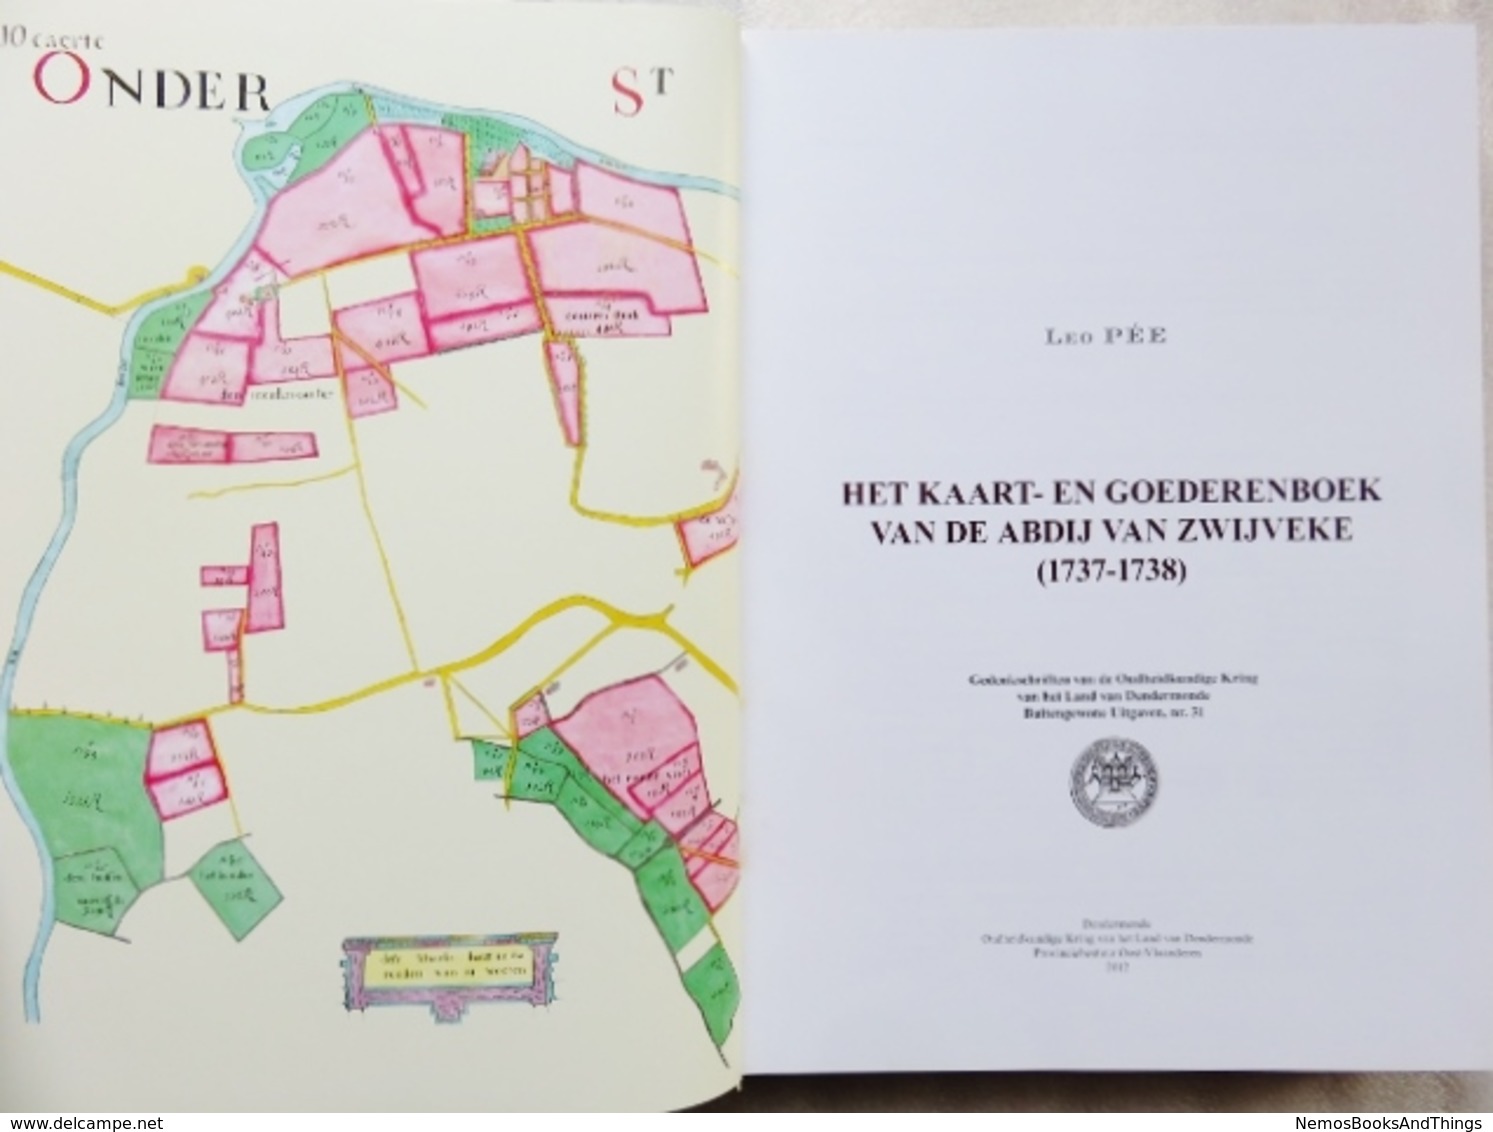 Het kaart- en goederenboek van de abdij van Zwijveke (1737-1738) - Leo Pée - 2012  - Dendermonde